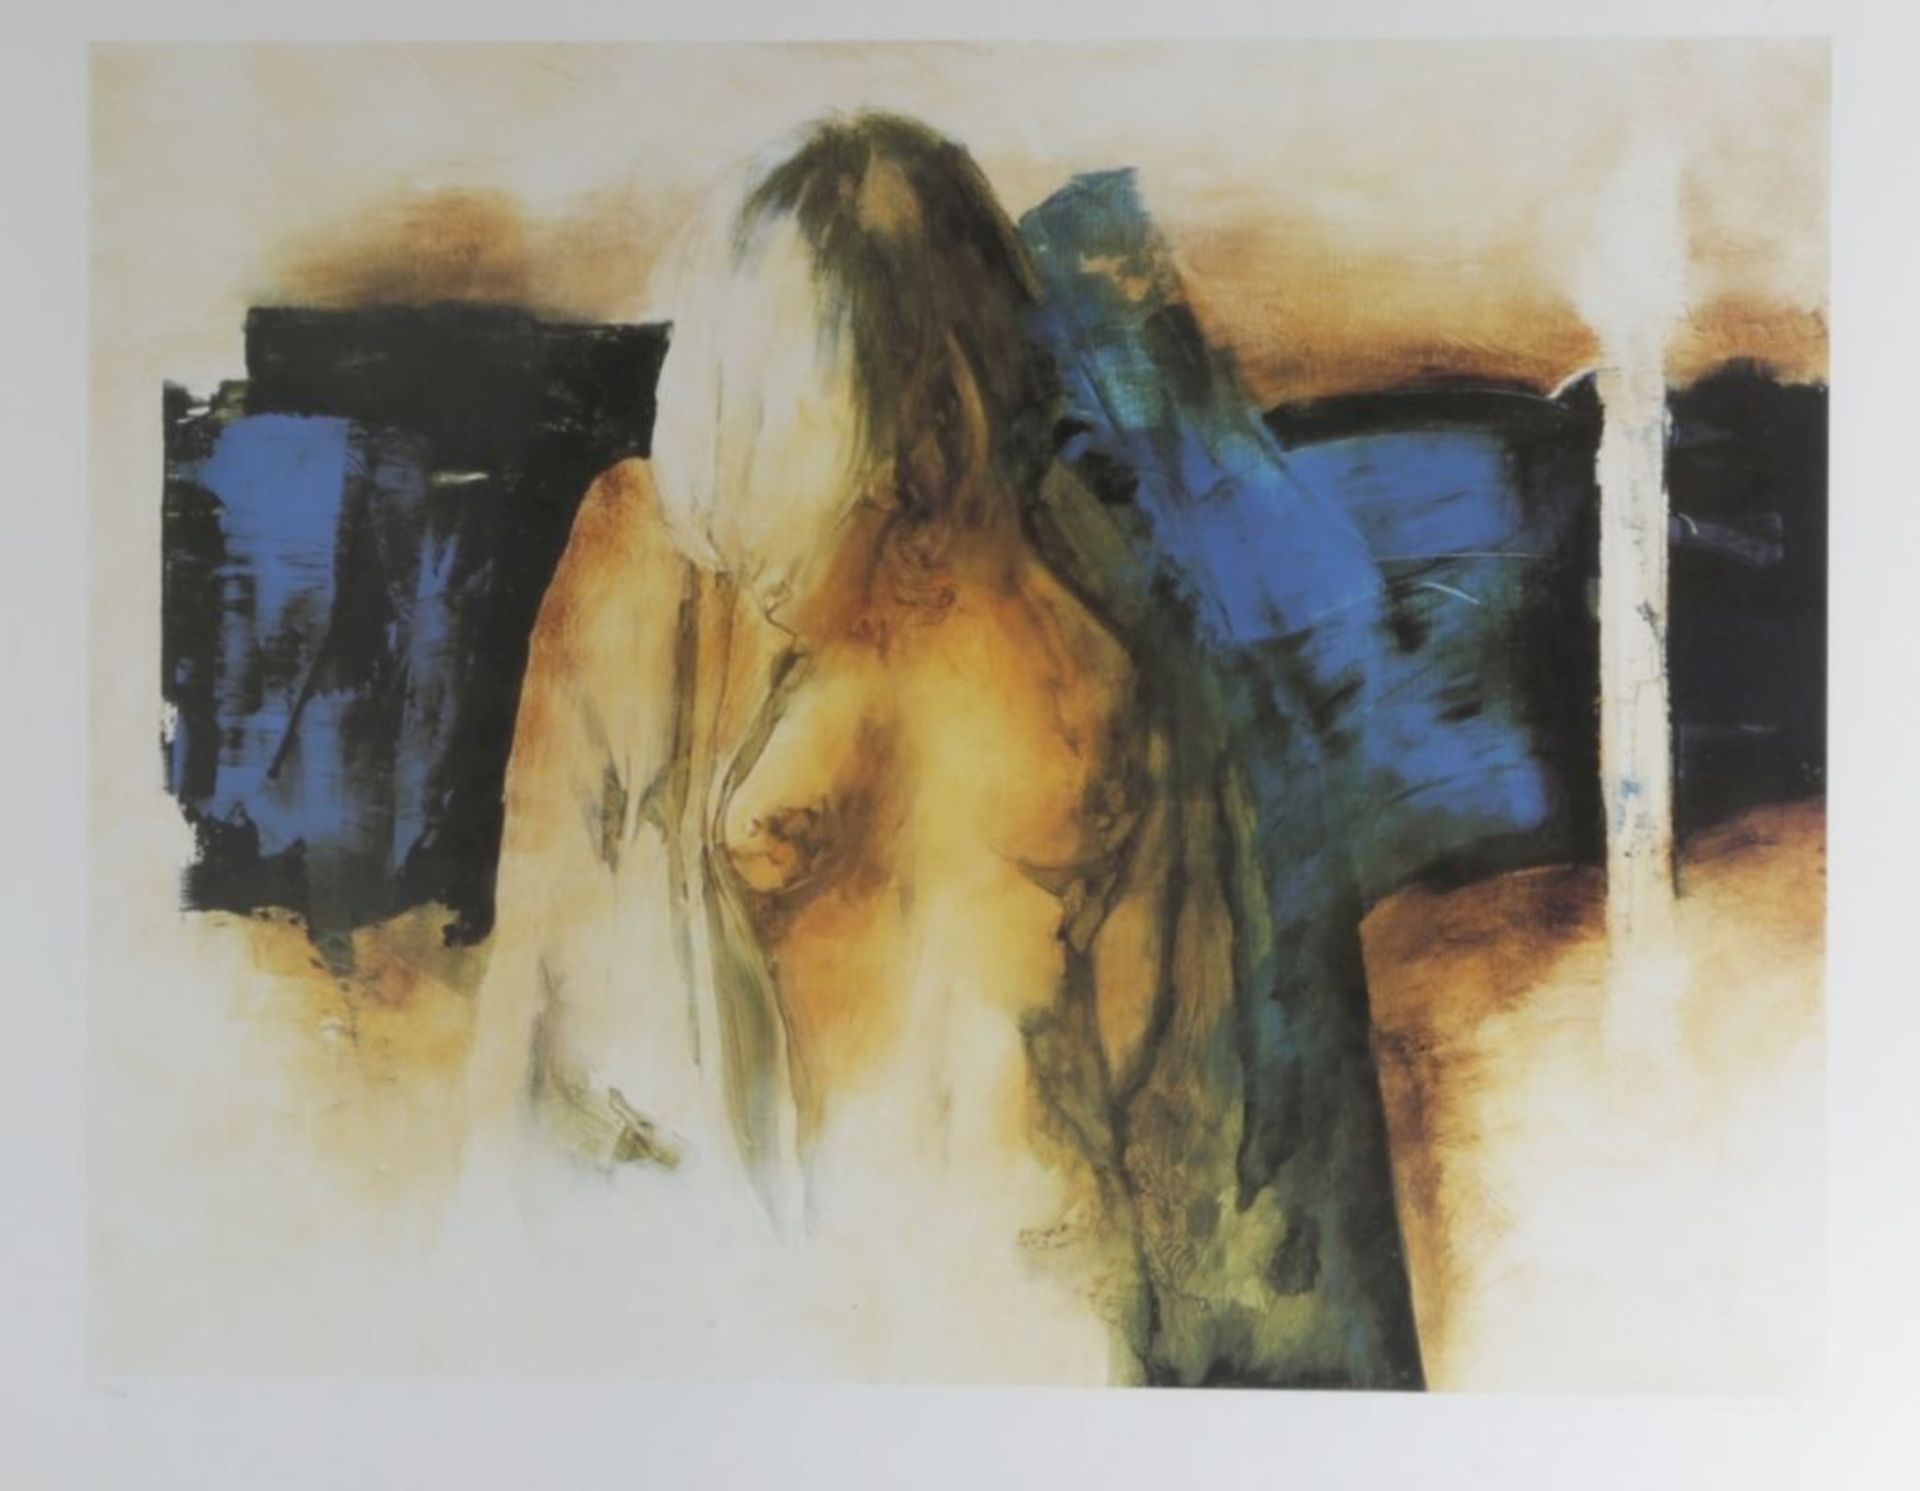 Canhorck, zeitgenössischer Künstler. "Weiblicher Akt", Lithographie, handsign., dat. 1994,num.